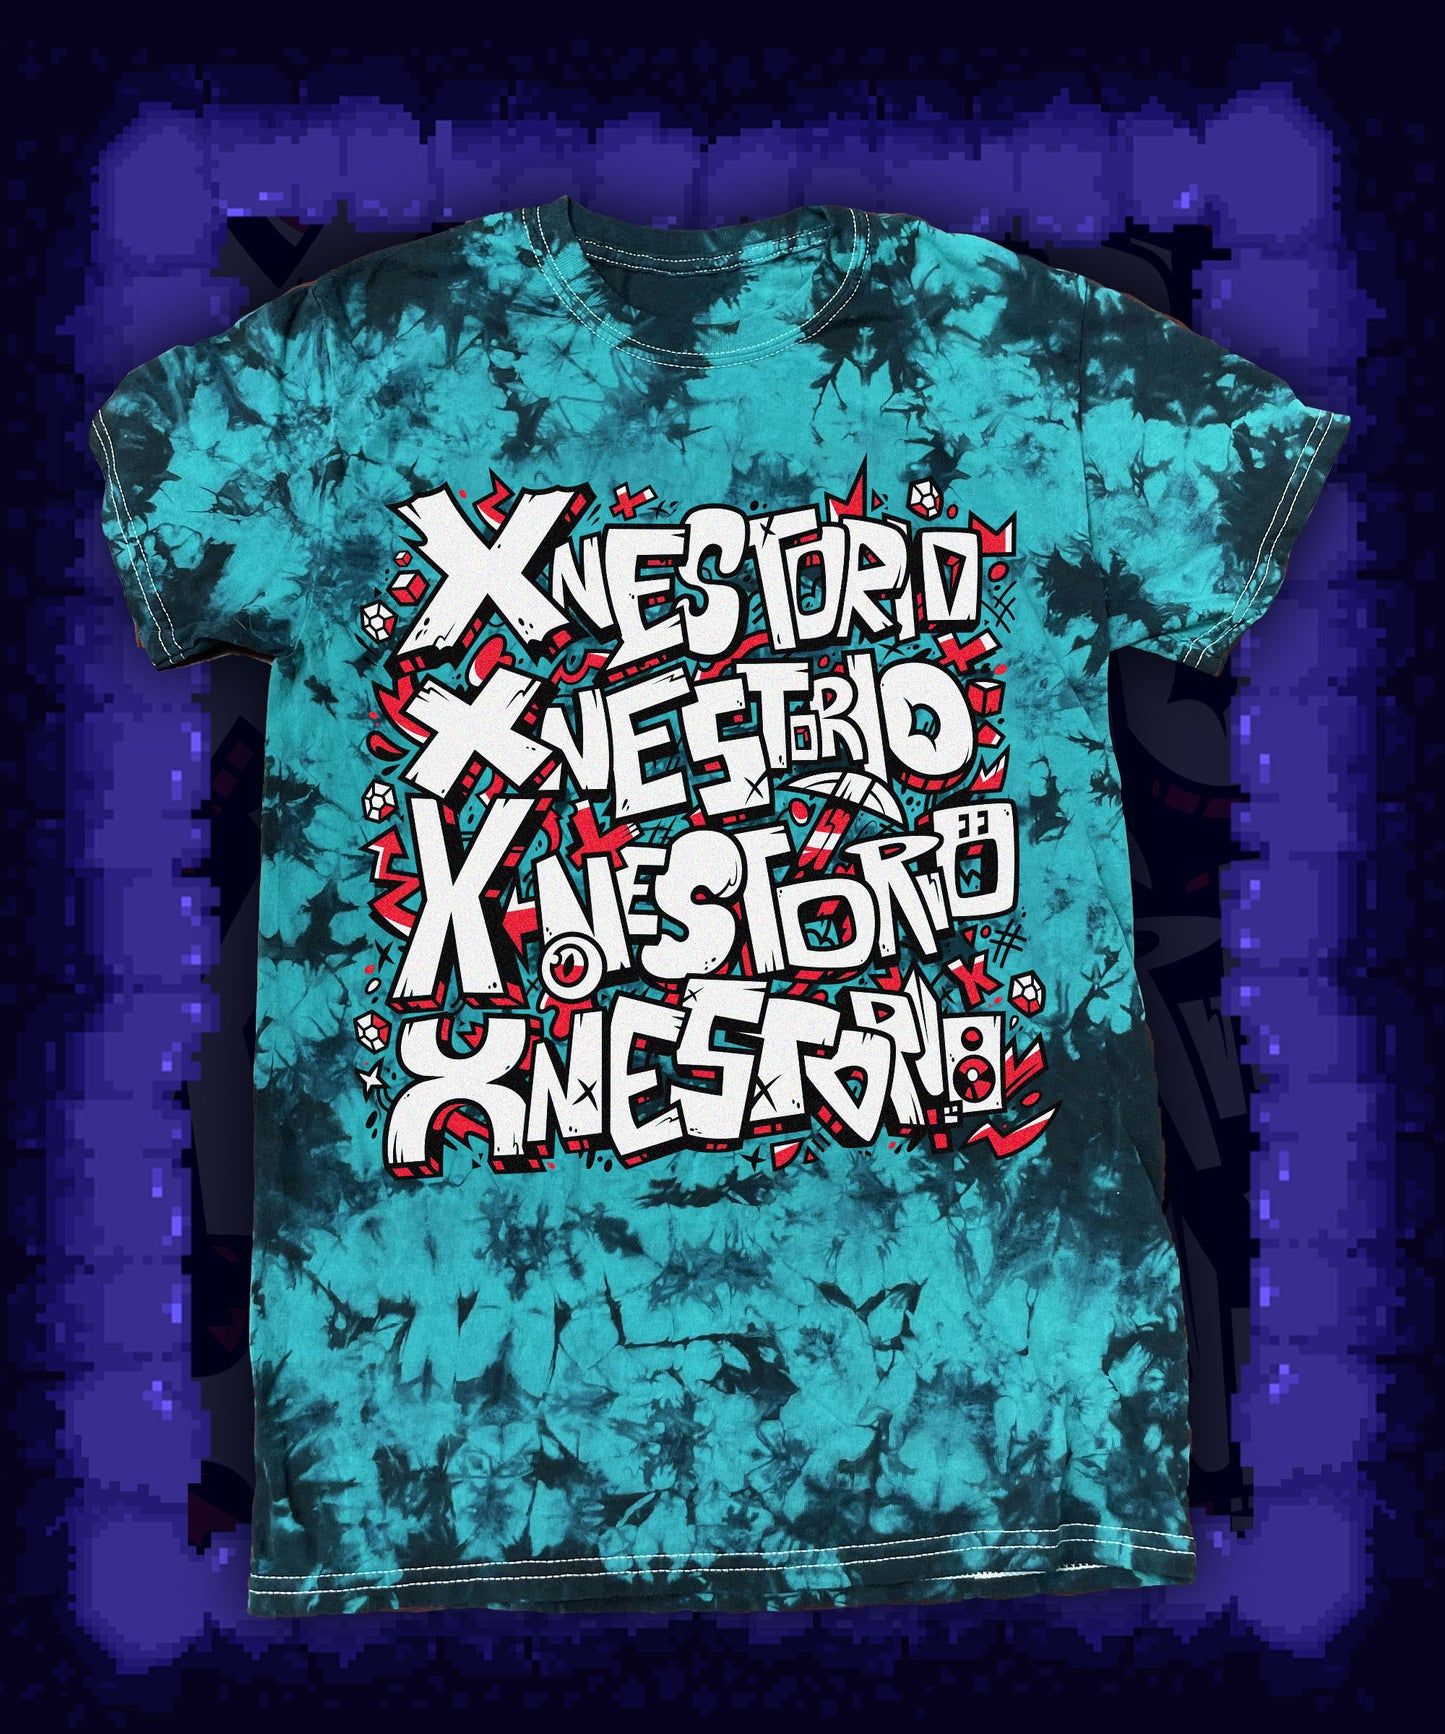 
                  
                    xNestorio Graffiti Black and Teal Shirt
                  
                